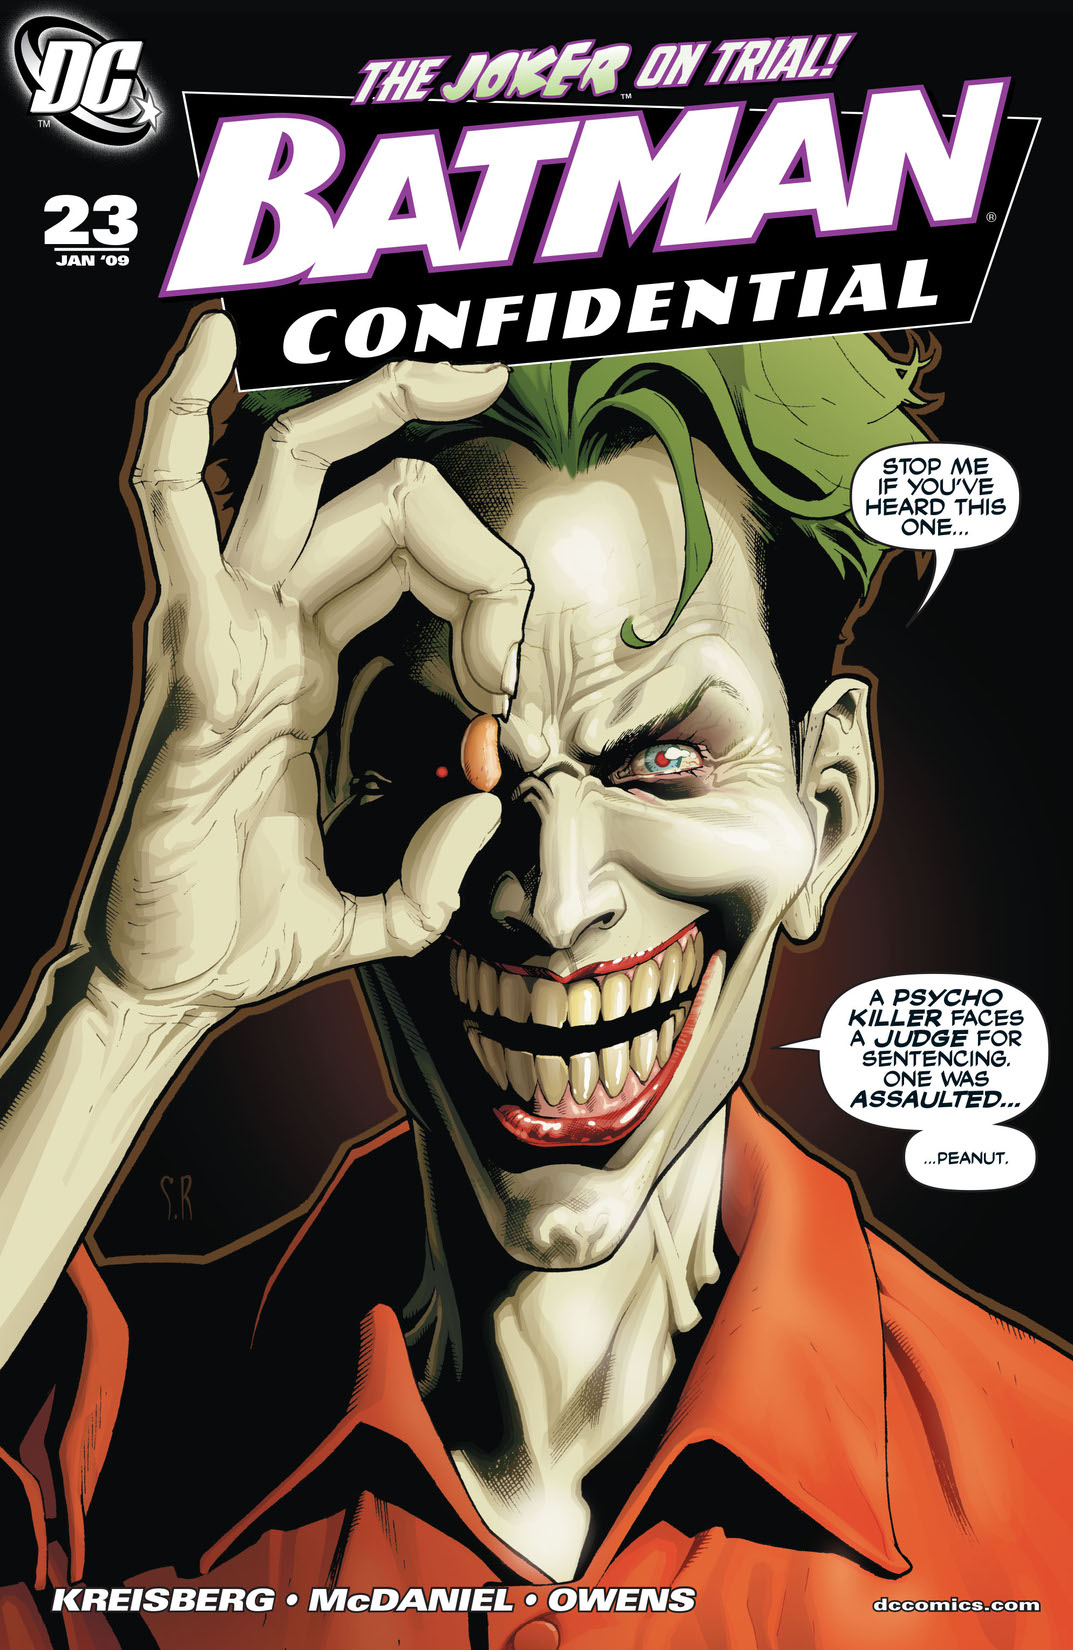 Batman Confidential #23 preview images